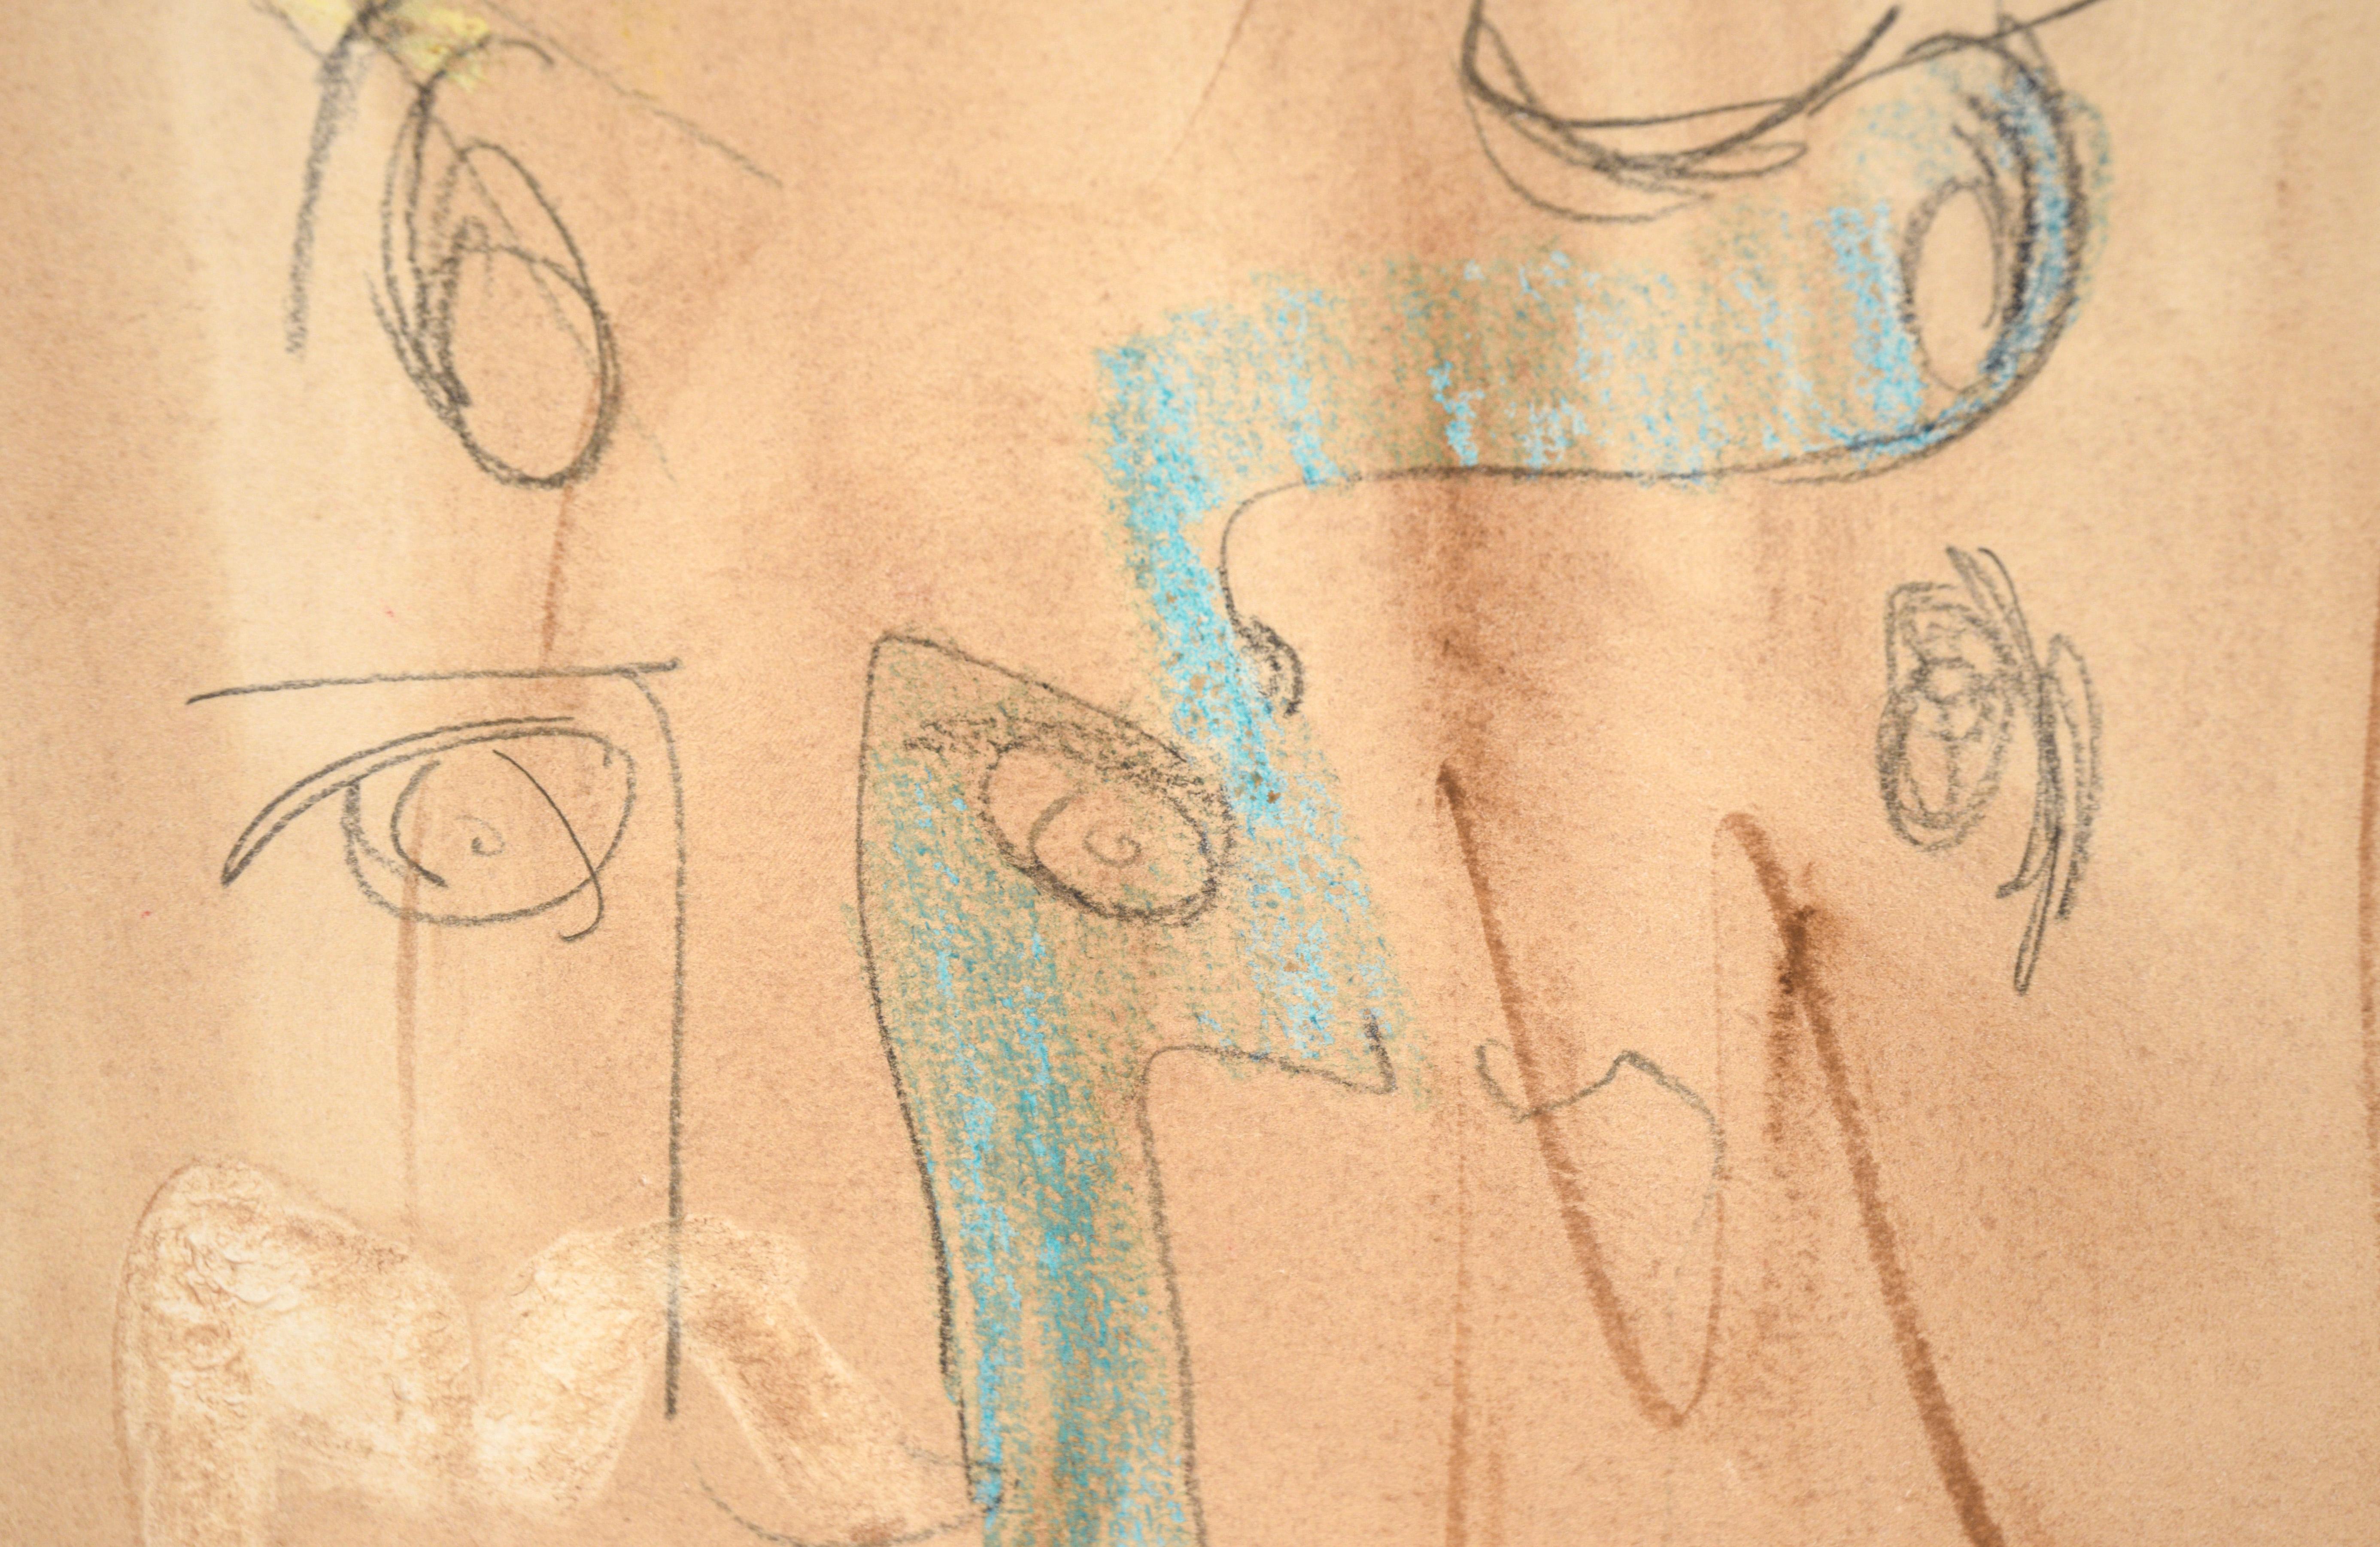 Figuratives abstraktes Aquarell und Bleistift auf Papier „Die Augen haben es“ von The Lovers

Ein skurriles figuratives Gemälde des in Kalifornien lebenden Künstlers Ricardo de Silva (Brasilianer, 20. Jahrhundert). Mehrere Gesichter überlagern sich